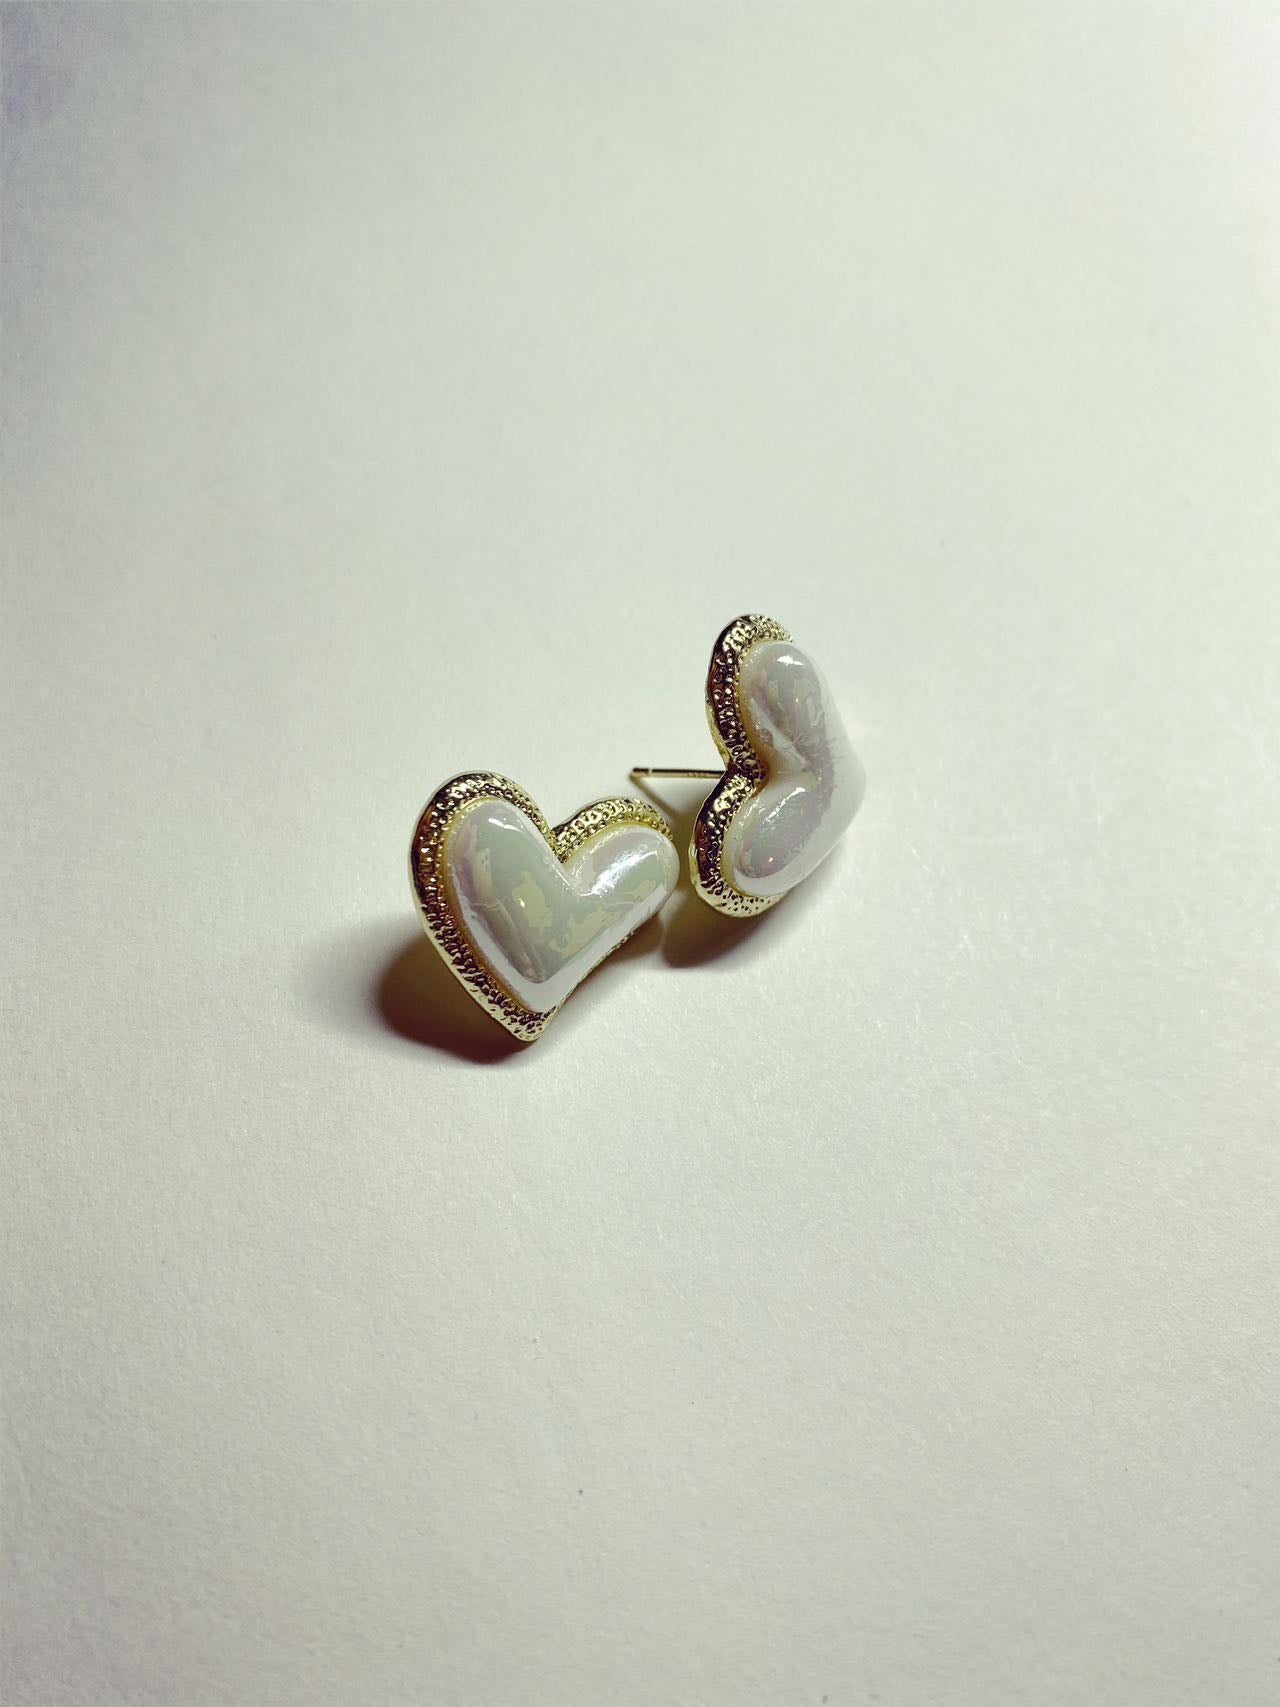 Simple heart-shaped earrings